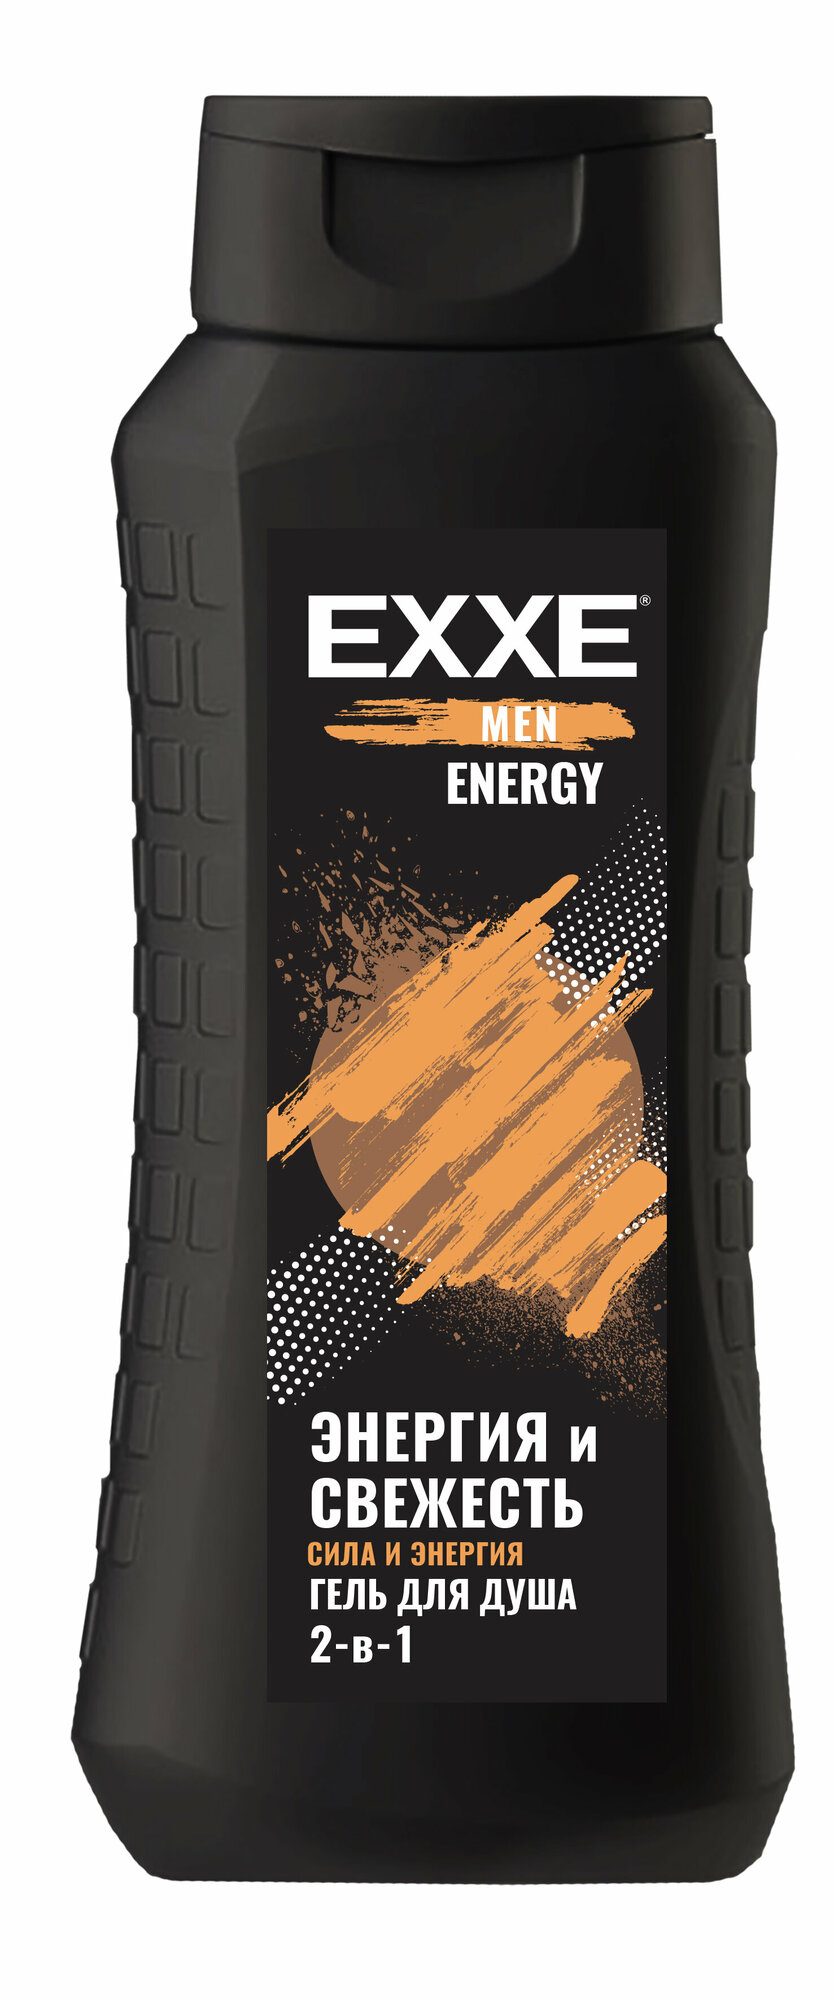 EXXE MEN гель для душа 2в1 "Сила и энергия" ENERGY, 400 мл